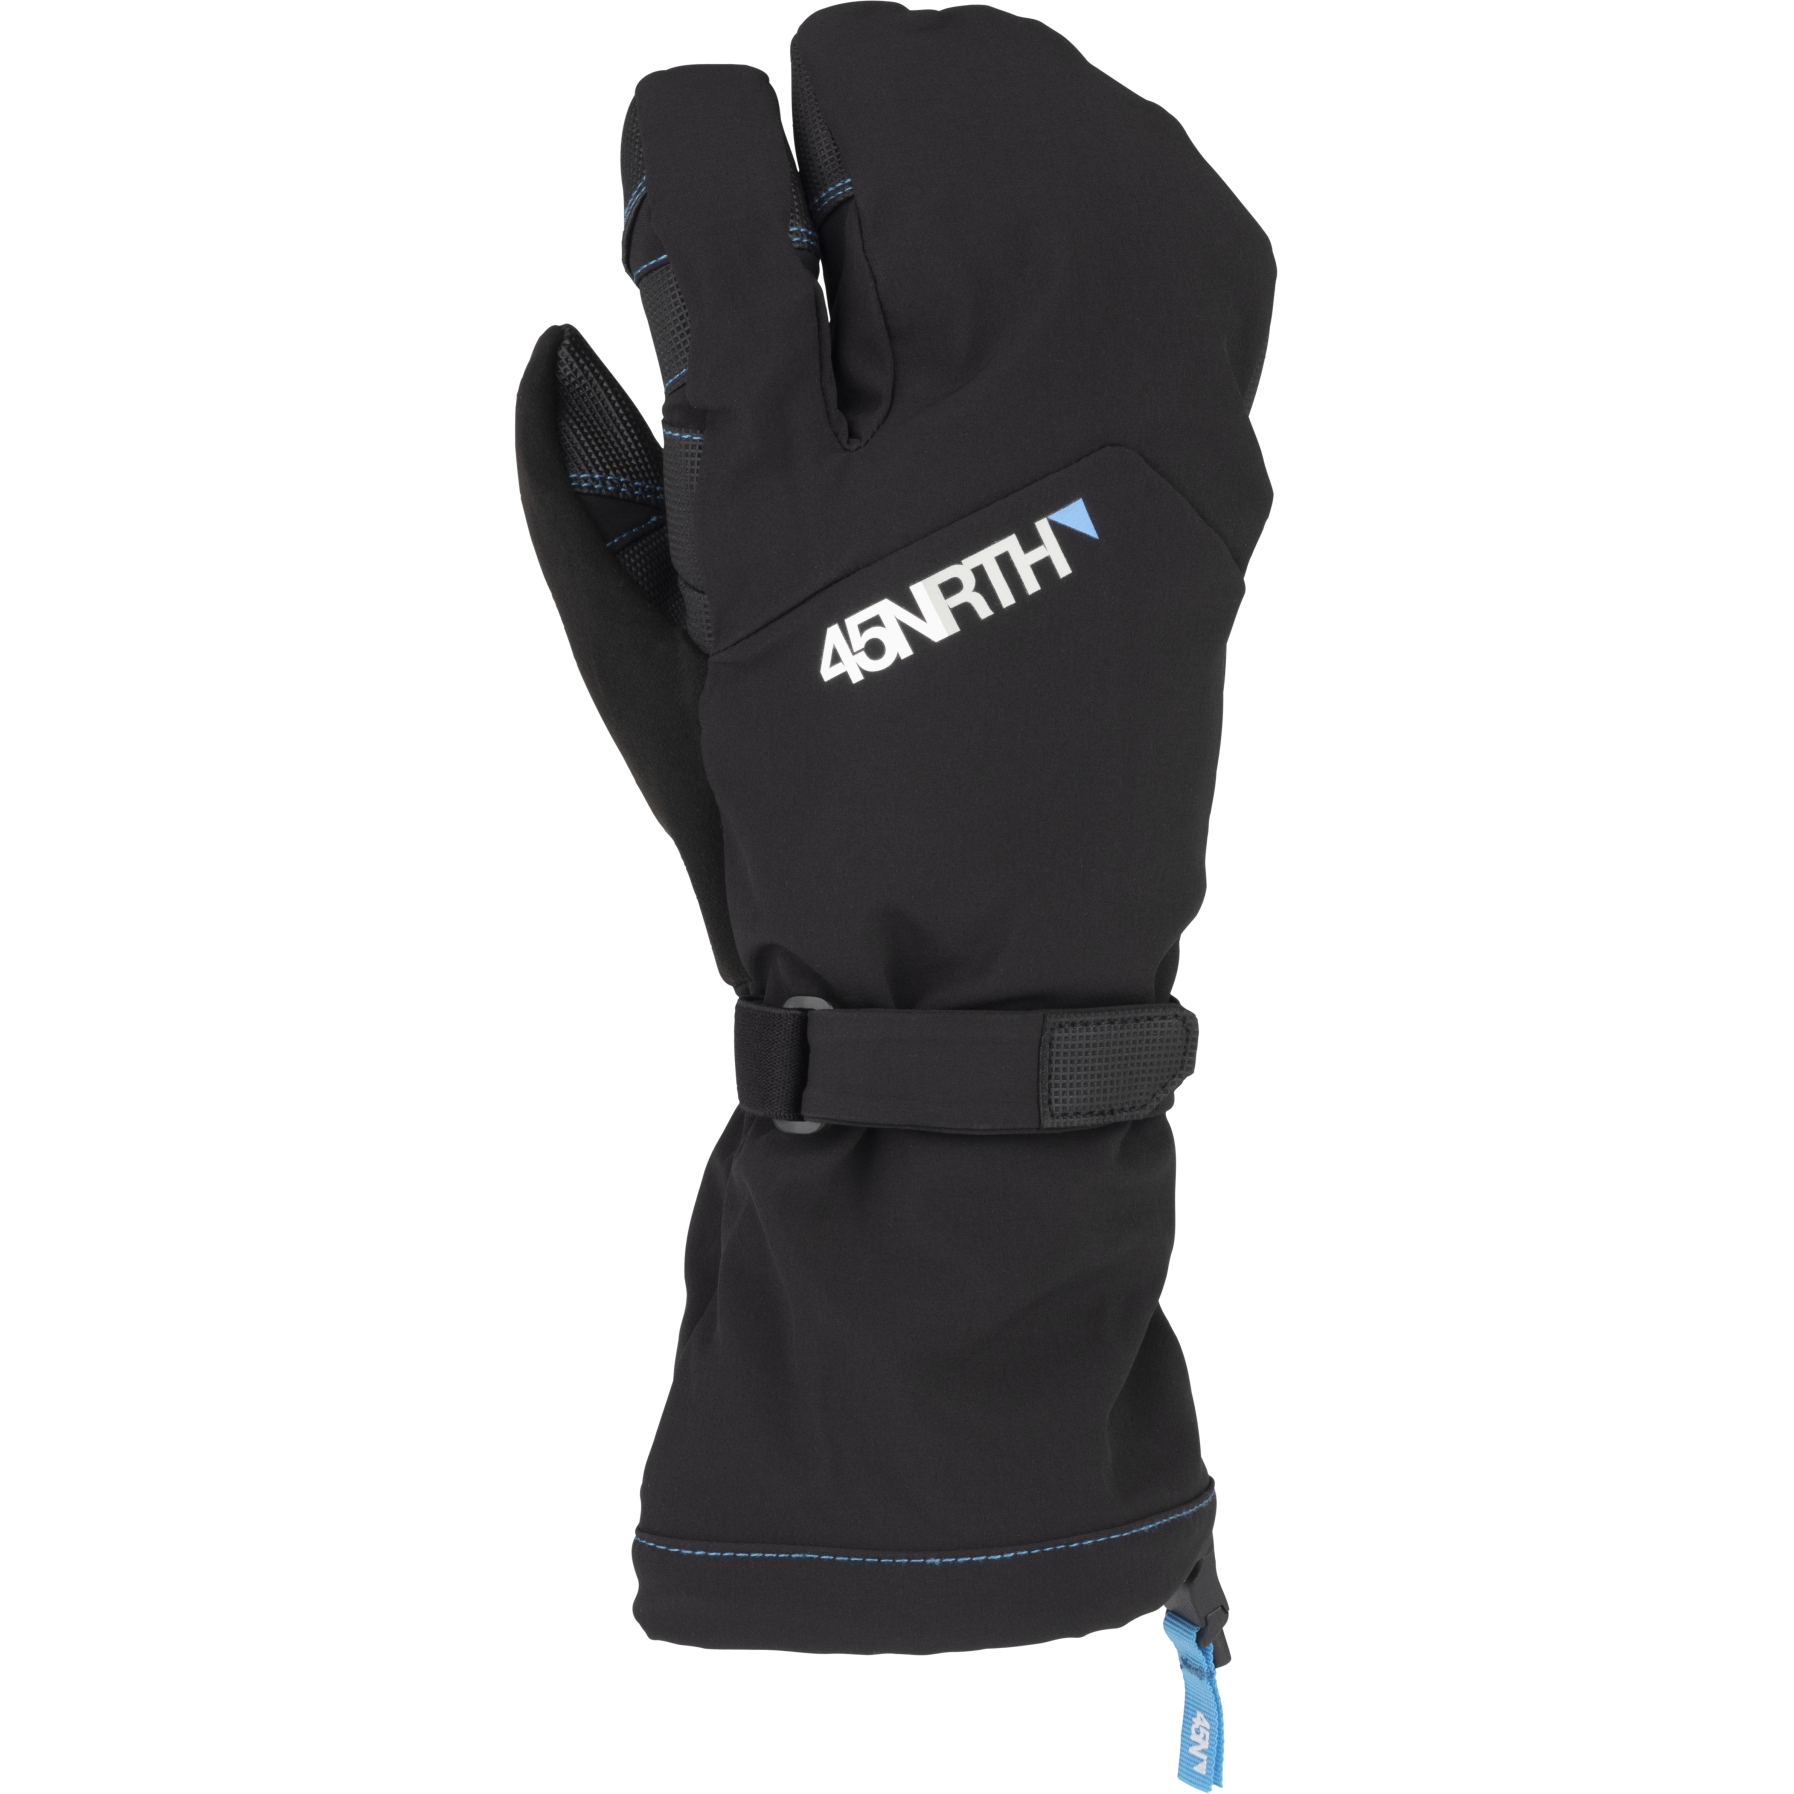 Productfoto van 45NRTH Sturmfist 3 Gloves - black